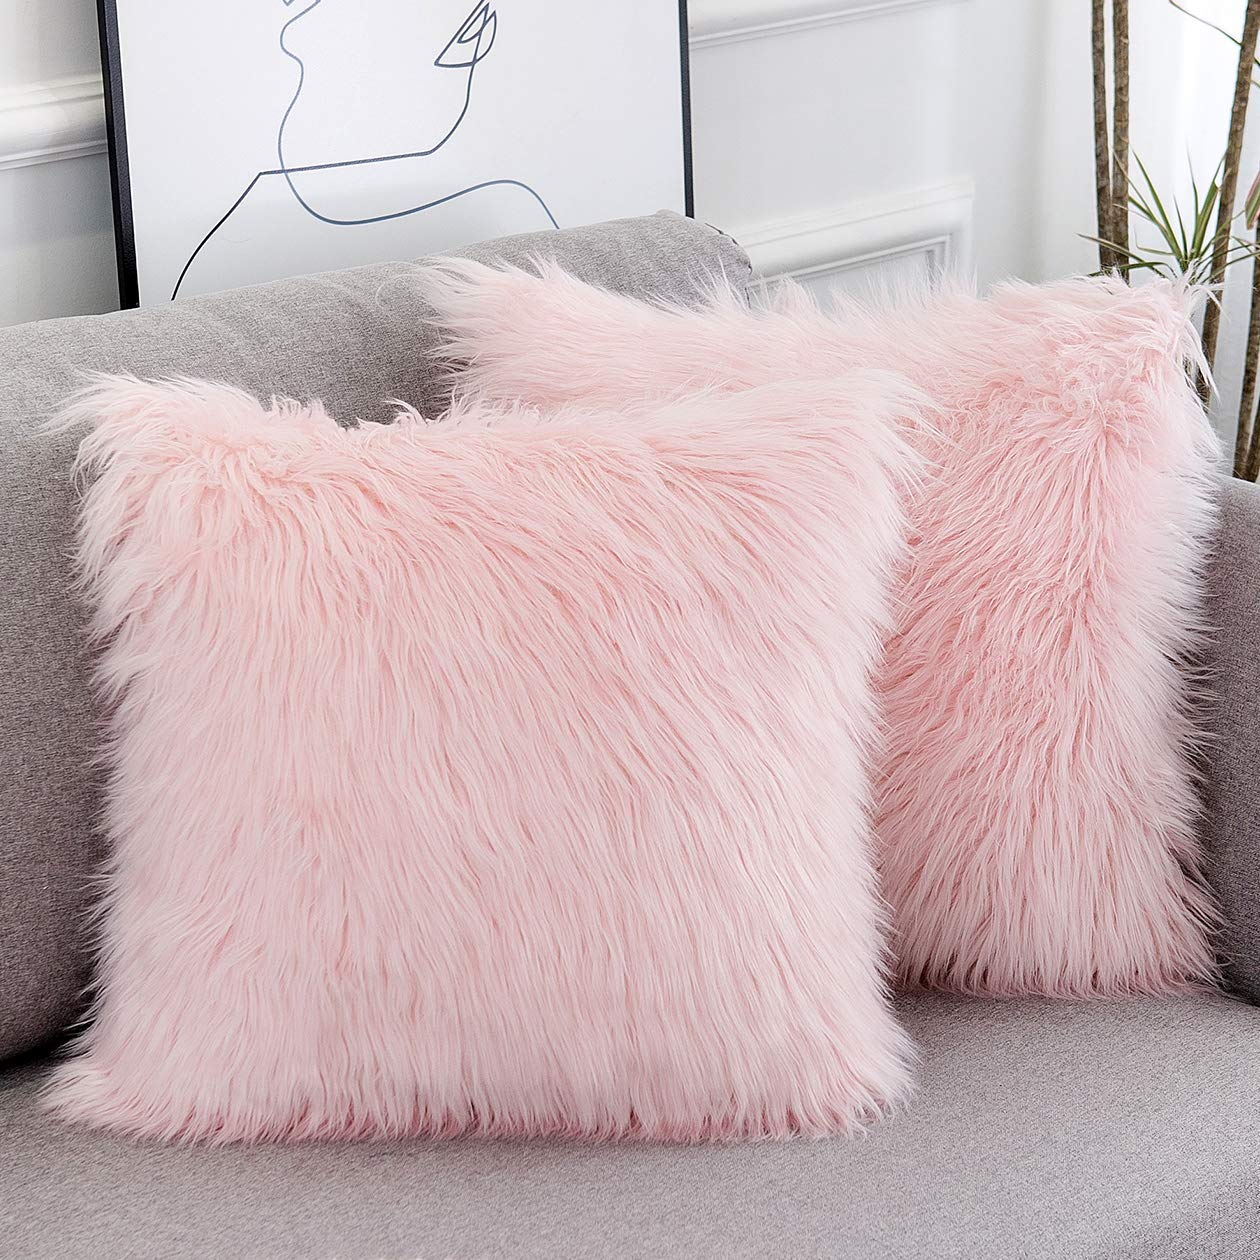 ပန်းရောင် Fluffy ခေါင်းအုံးအဖုံးများ Faux Fur Merino Style Square Fuzzy Decor Cushion Case